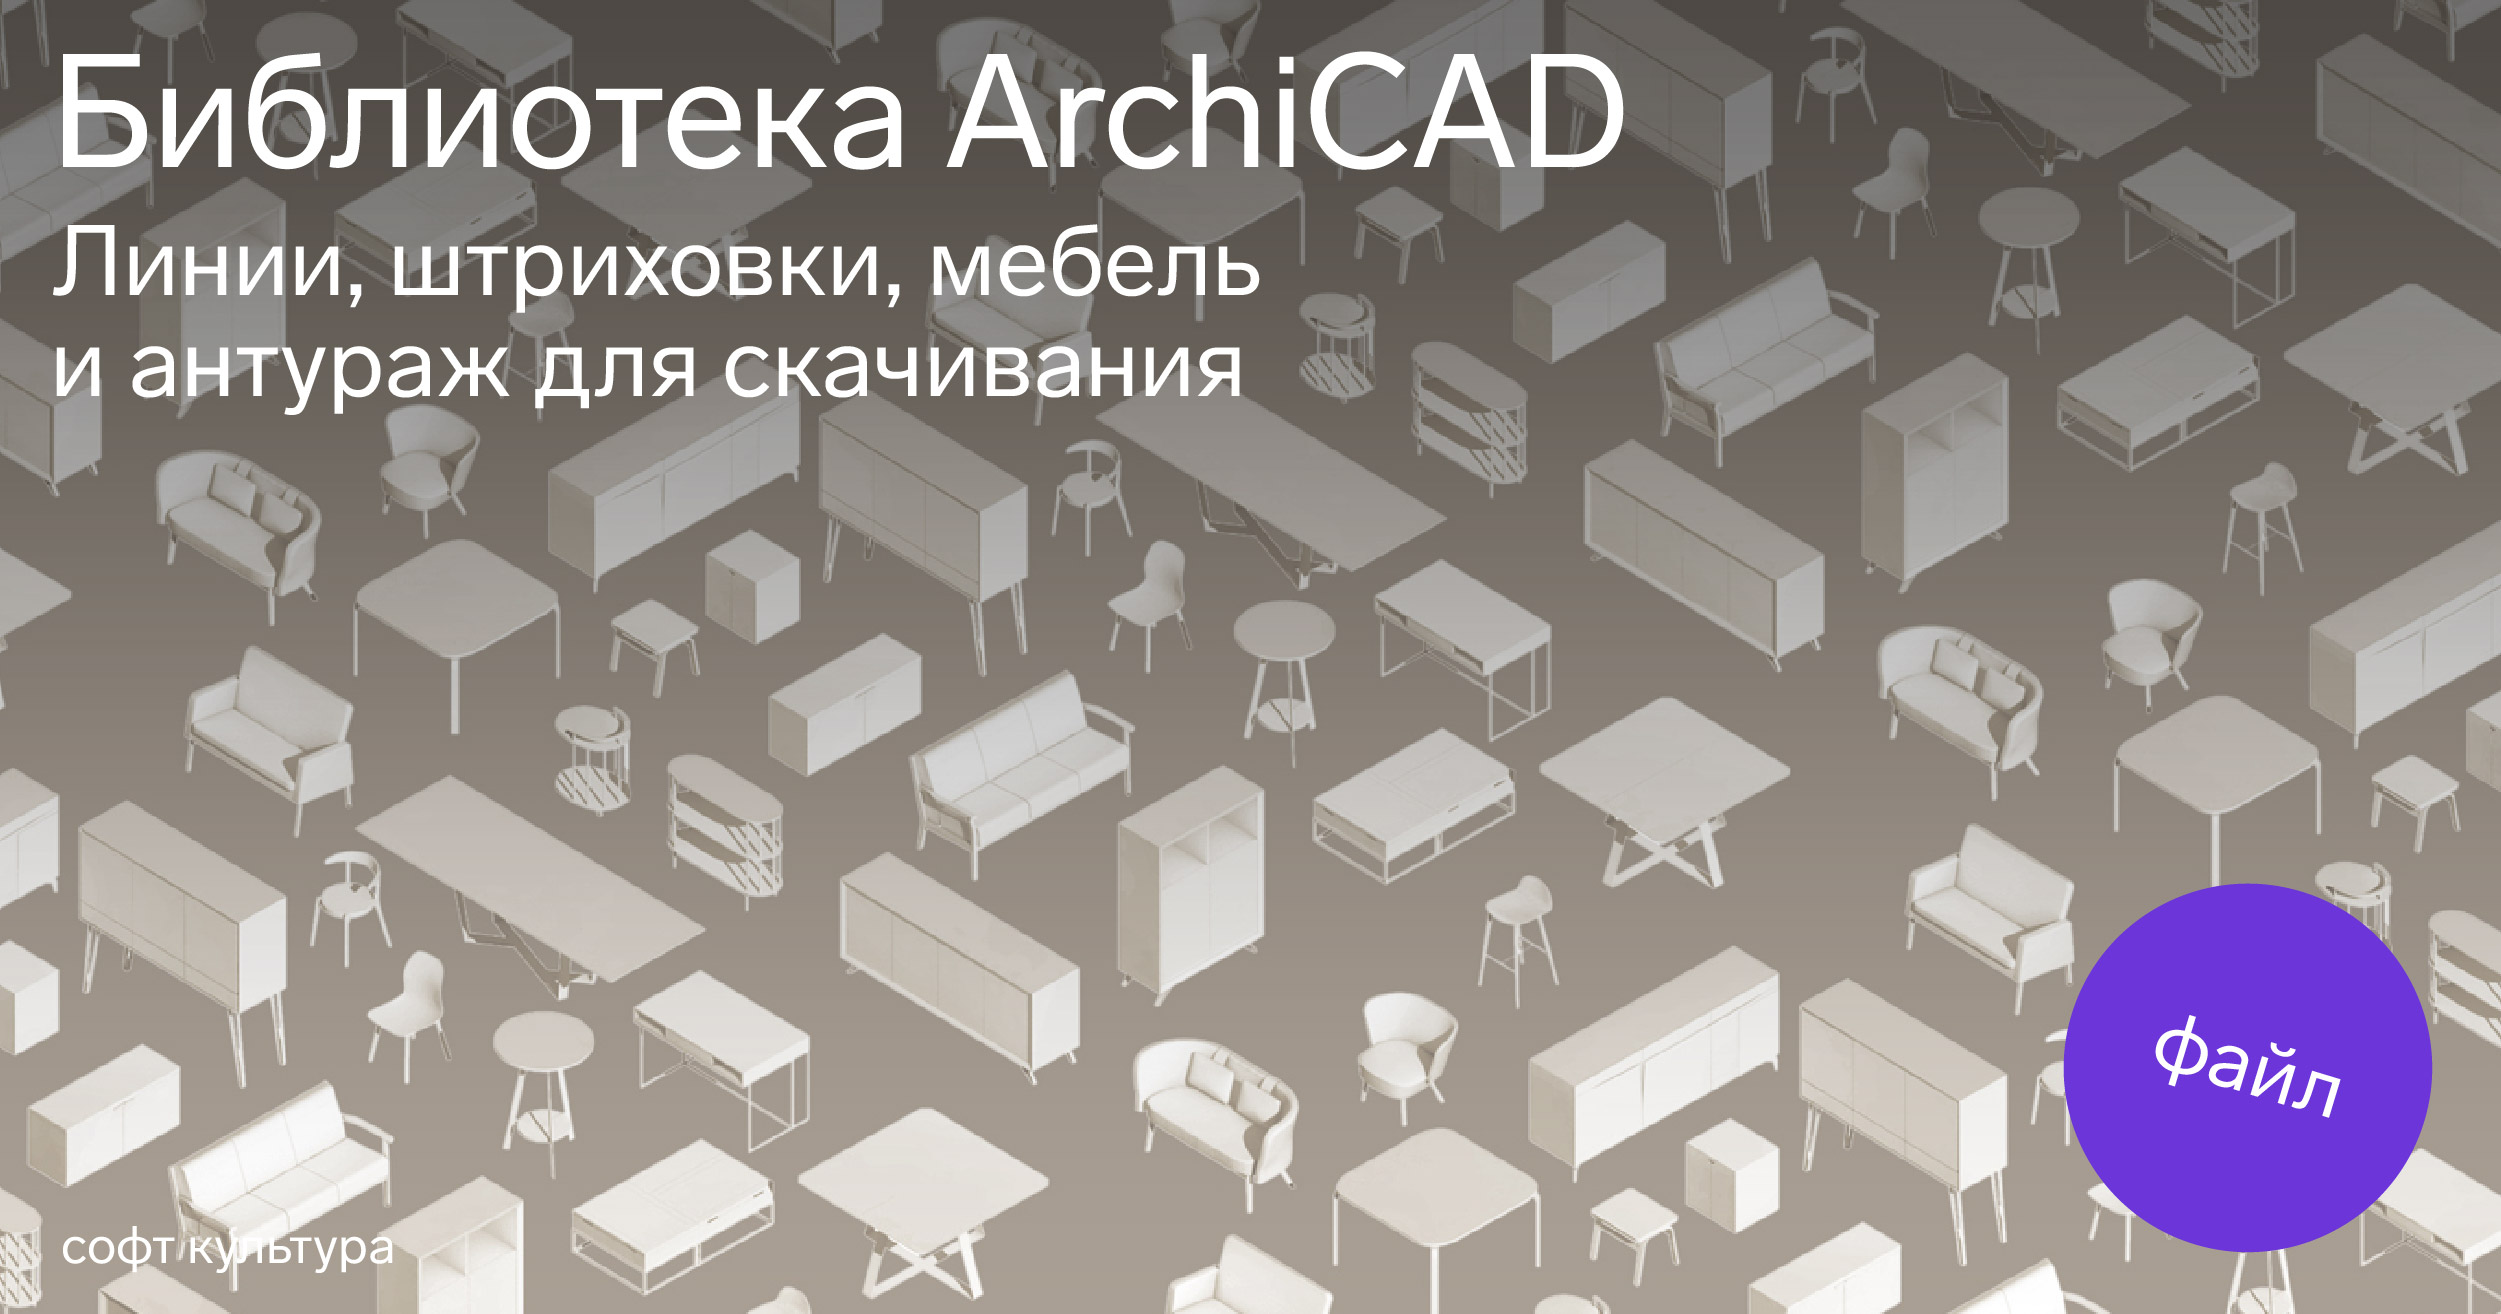 ArchiCAD 27 Build 4001 + Rus + Дополнения + macOS